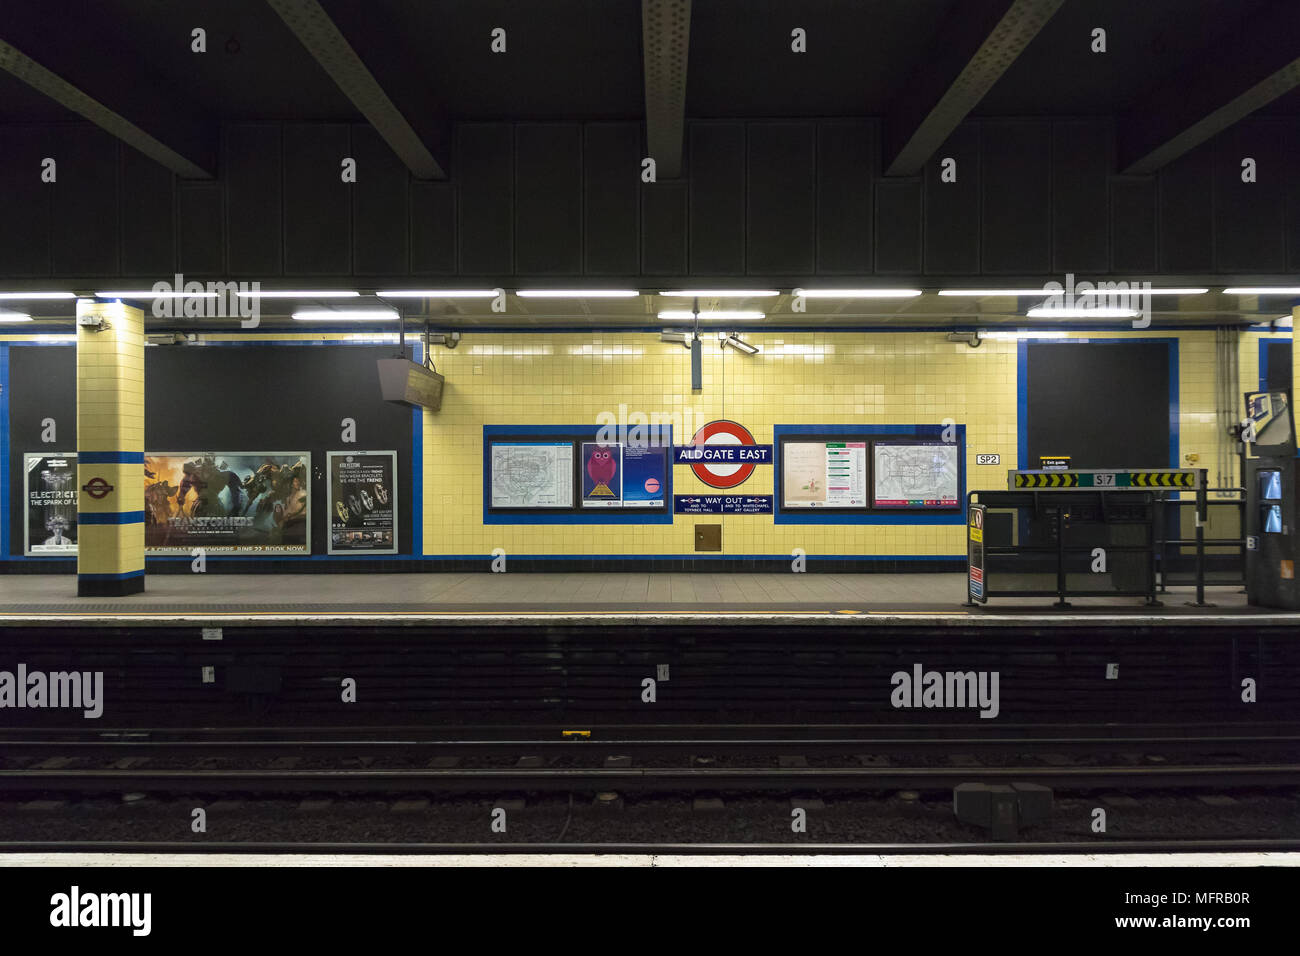 Londres, Royaume-Uni - 04 mai 2018 - plate-forme vide à la station de métro Aldgate East Banque D'Images